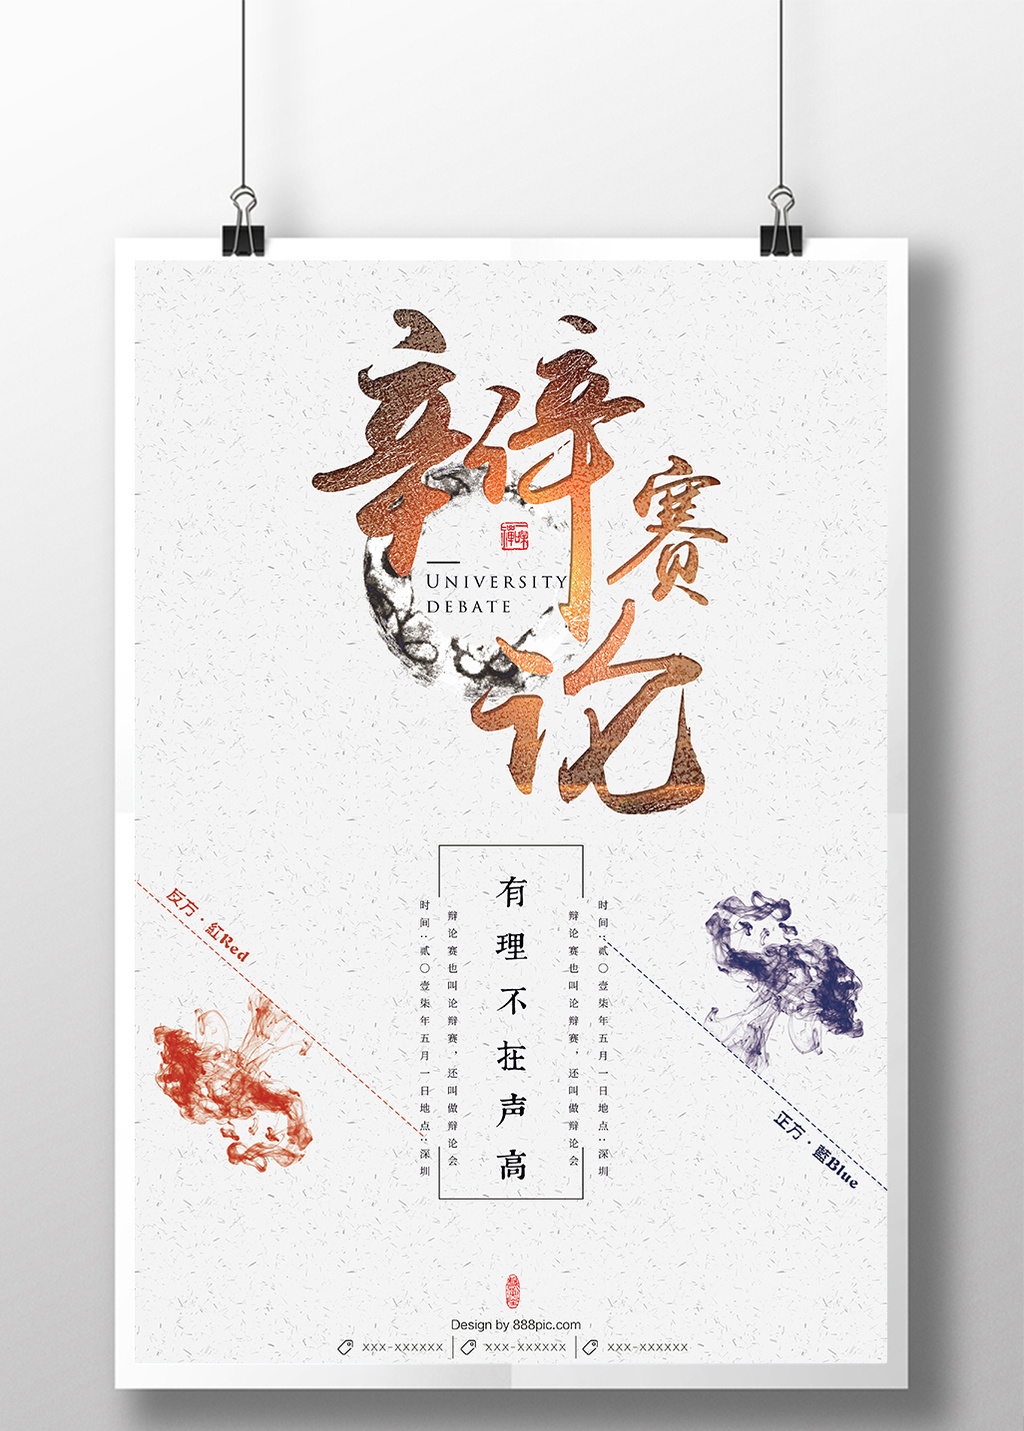 包图网提供精美好看的创意中国风辩论赛海报设计素材免费下载,本次